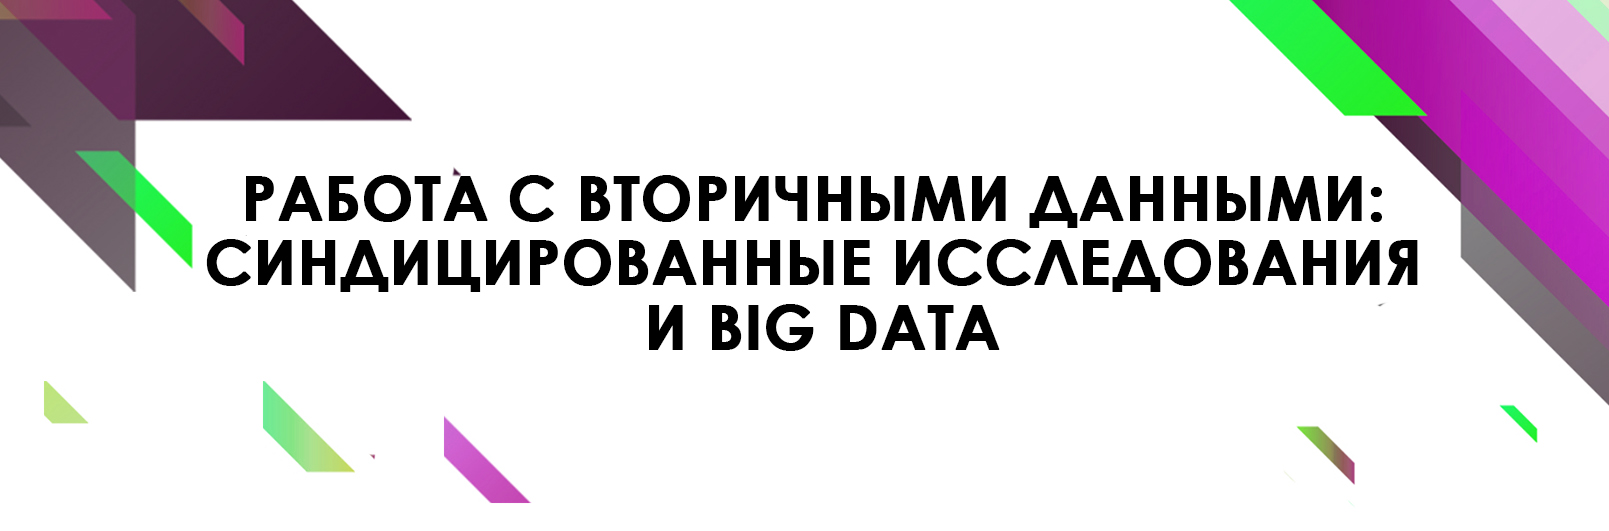 Работа с вторичными данными: синдицированные исследования и Big Data